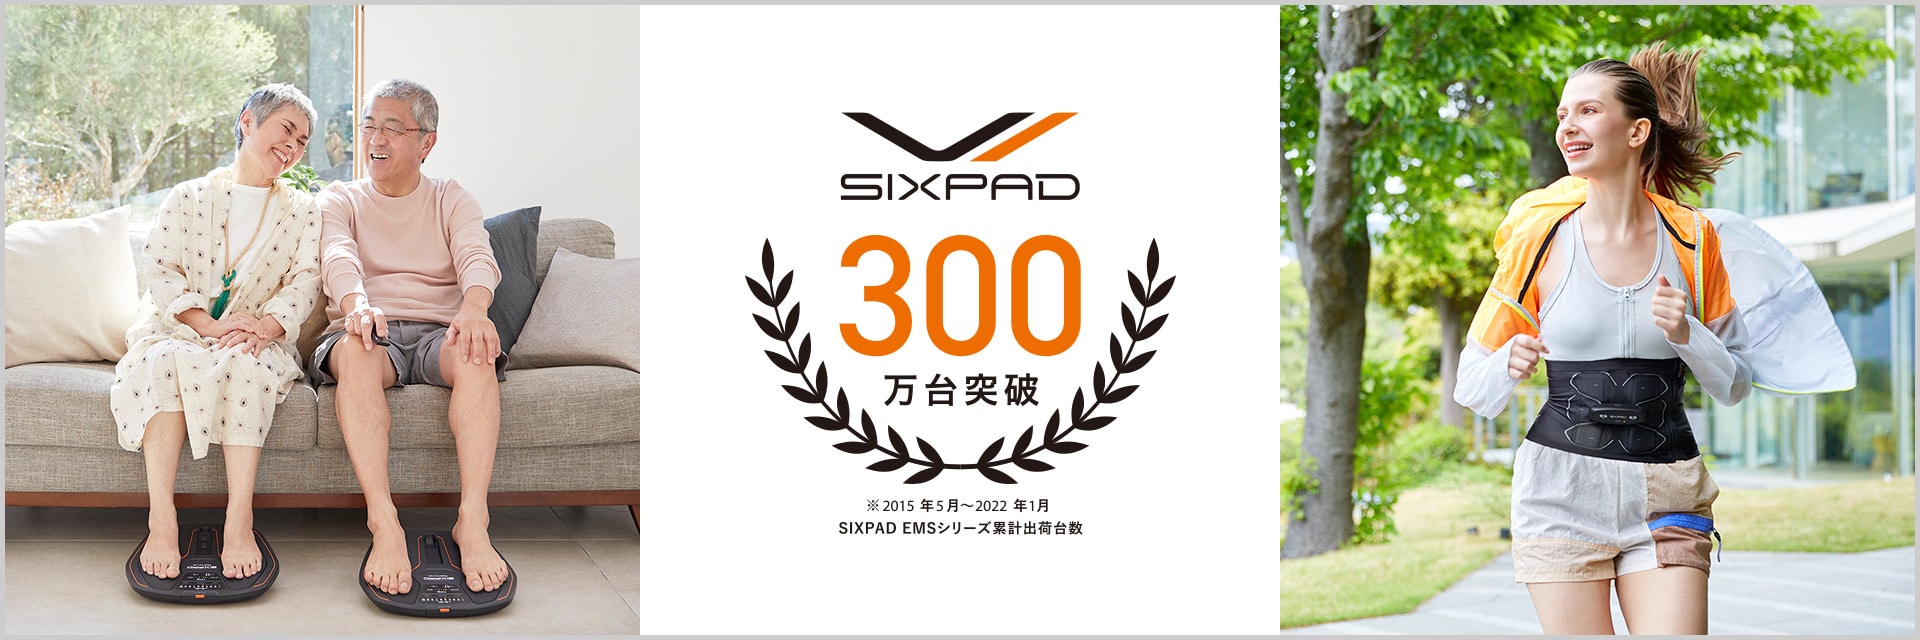 SIXPAD EMSシリーズ累計出荷台数300万台突破